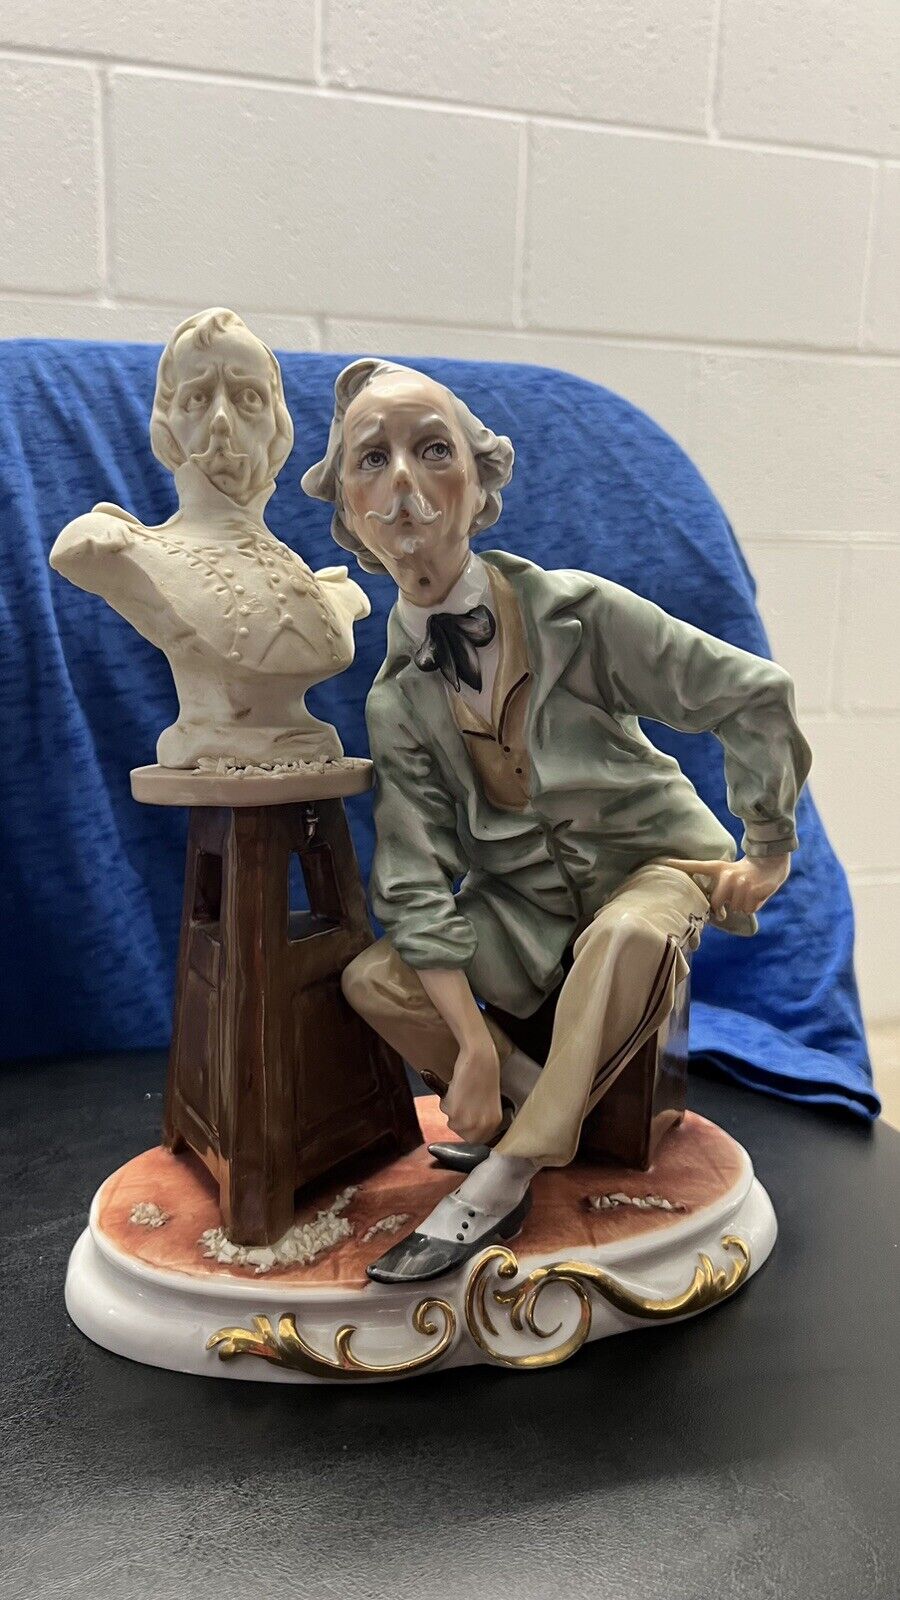 Lipper and Mann “The Sculptor” Figurine